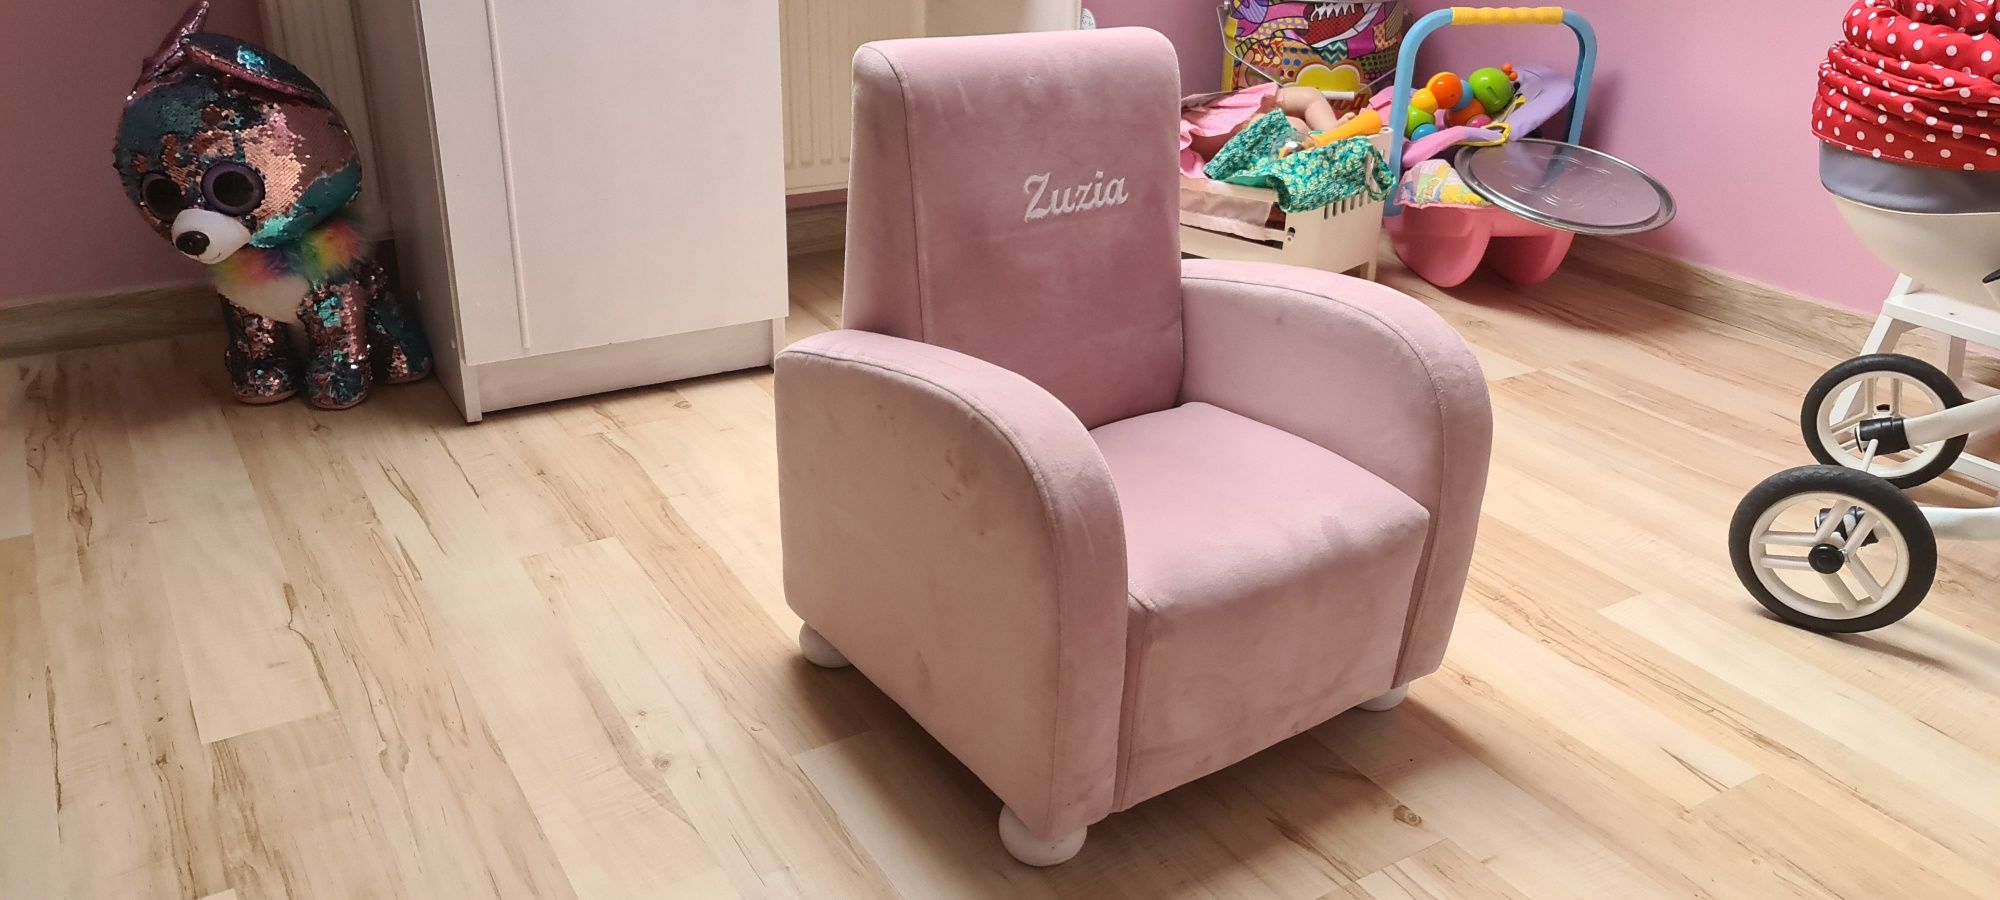 Fotel dziecięcy z imieniem  Zuzia